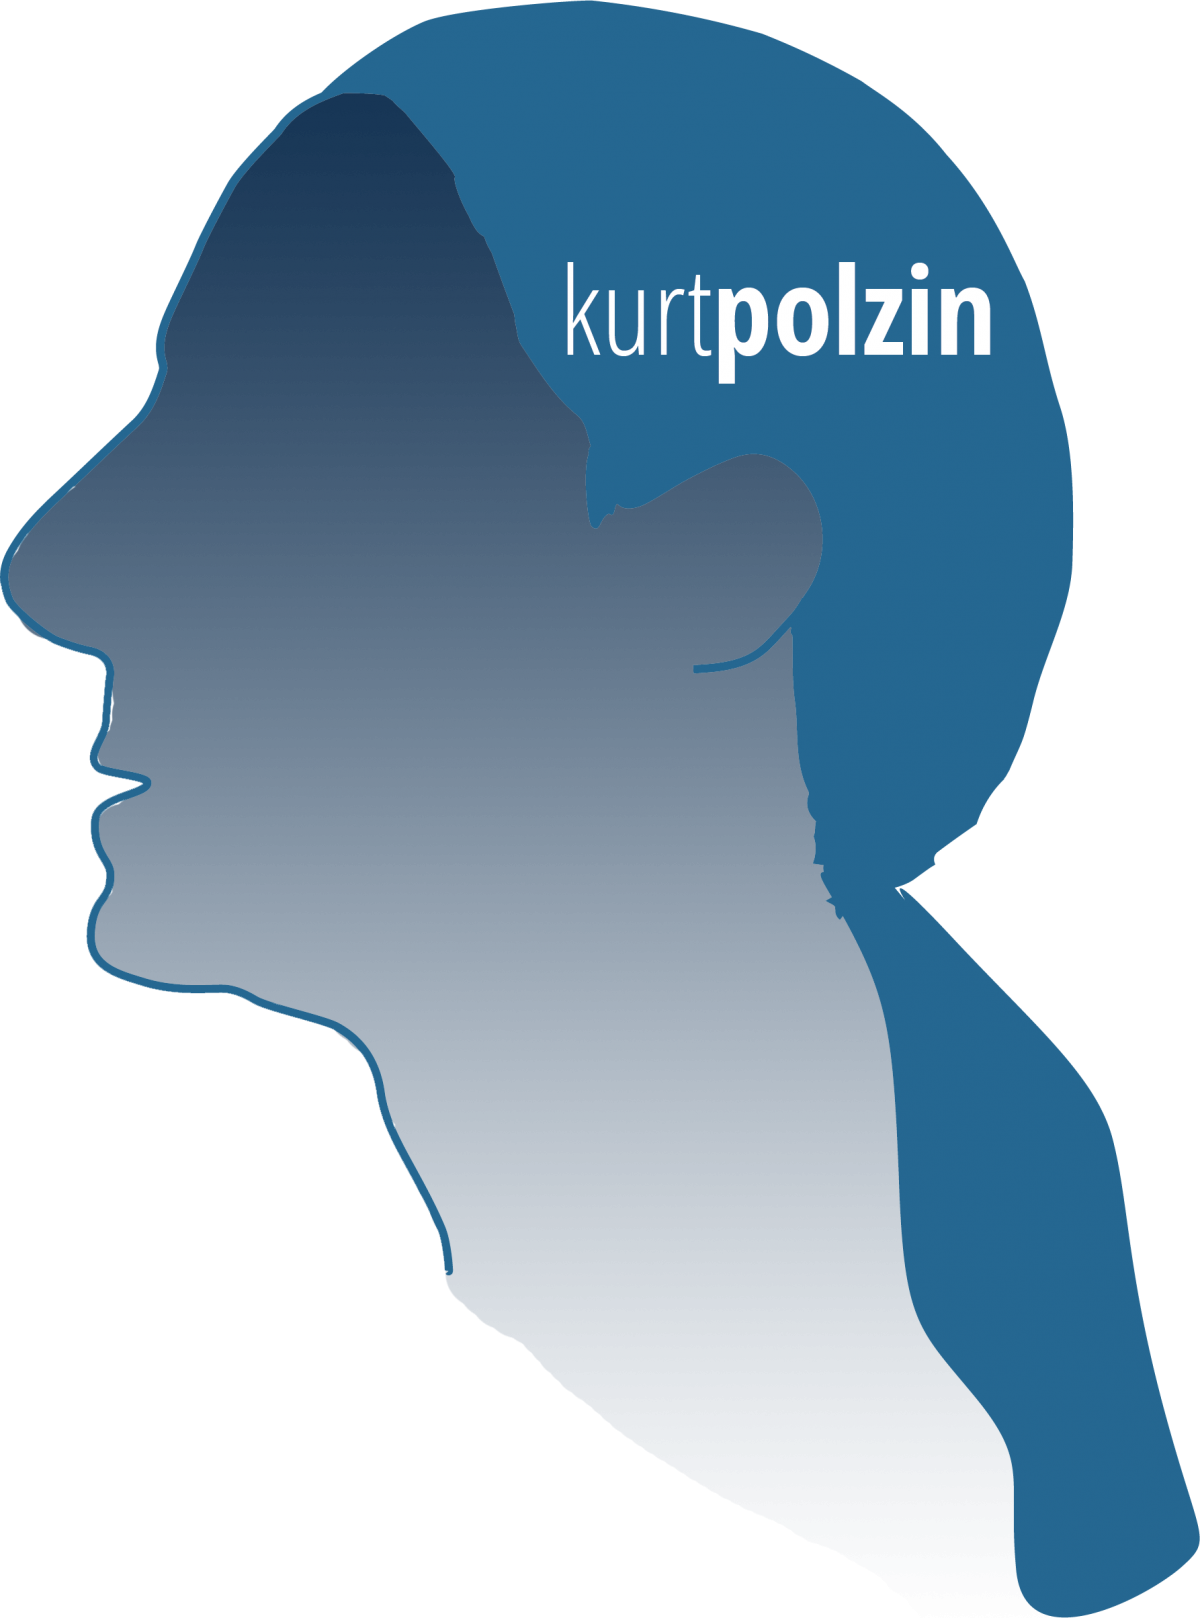 Kurt Polzin